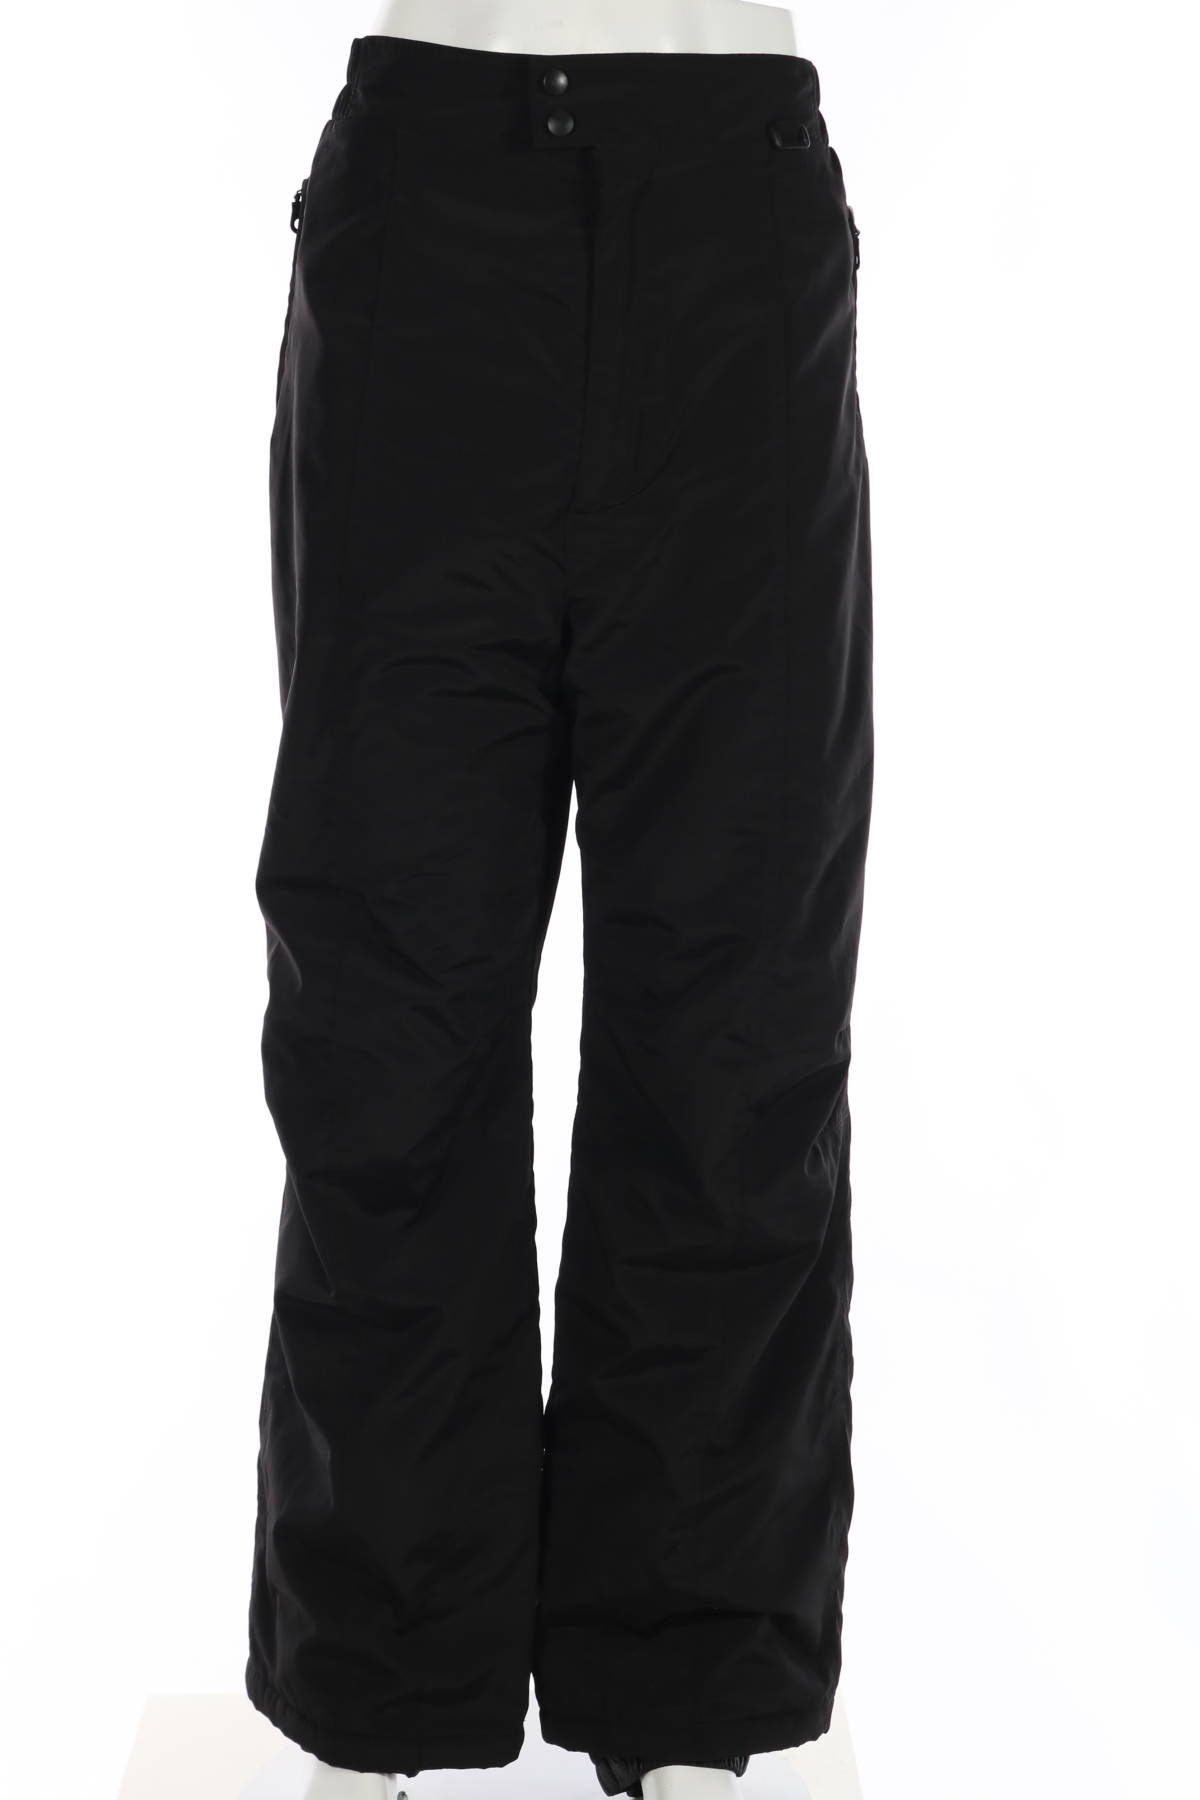 Панталон за зимни спортове BLACK BEAR1